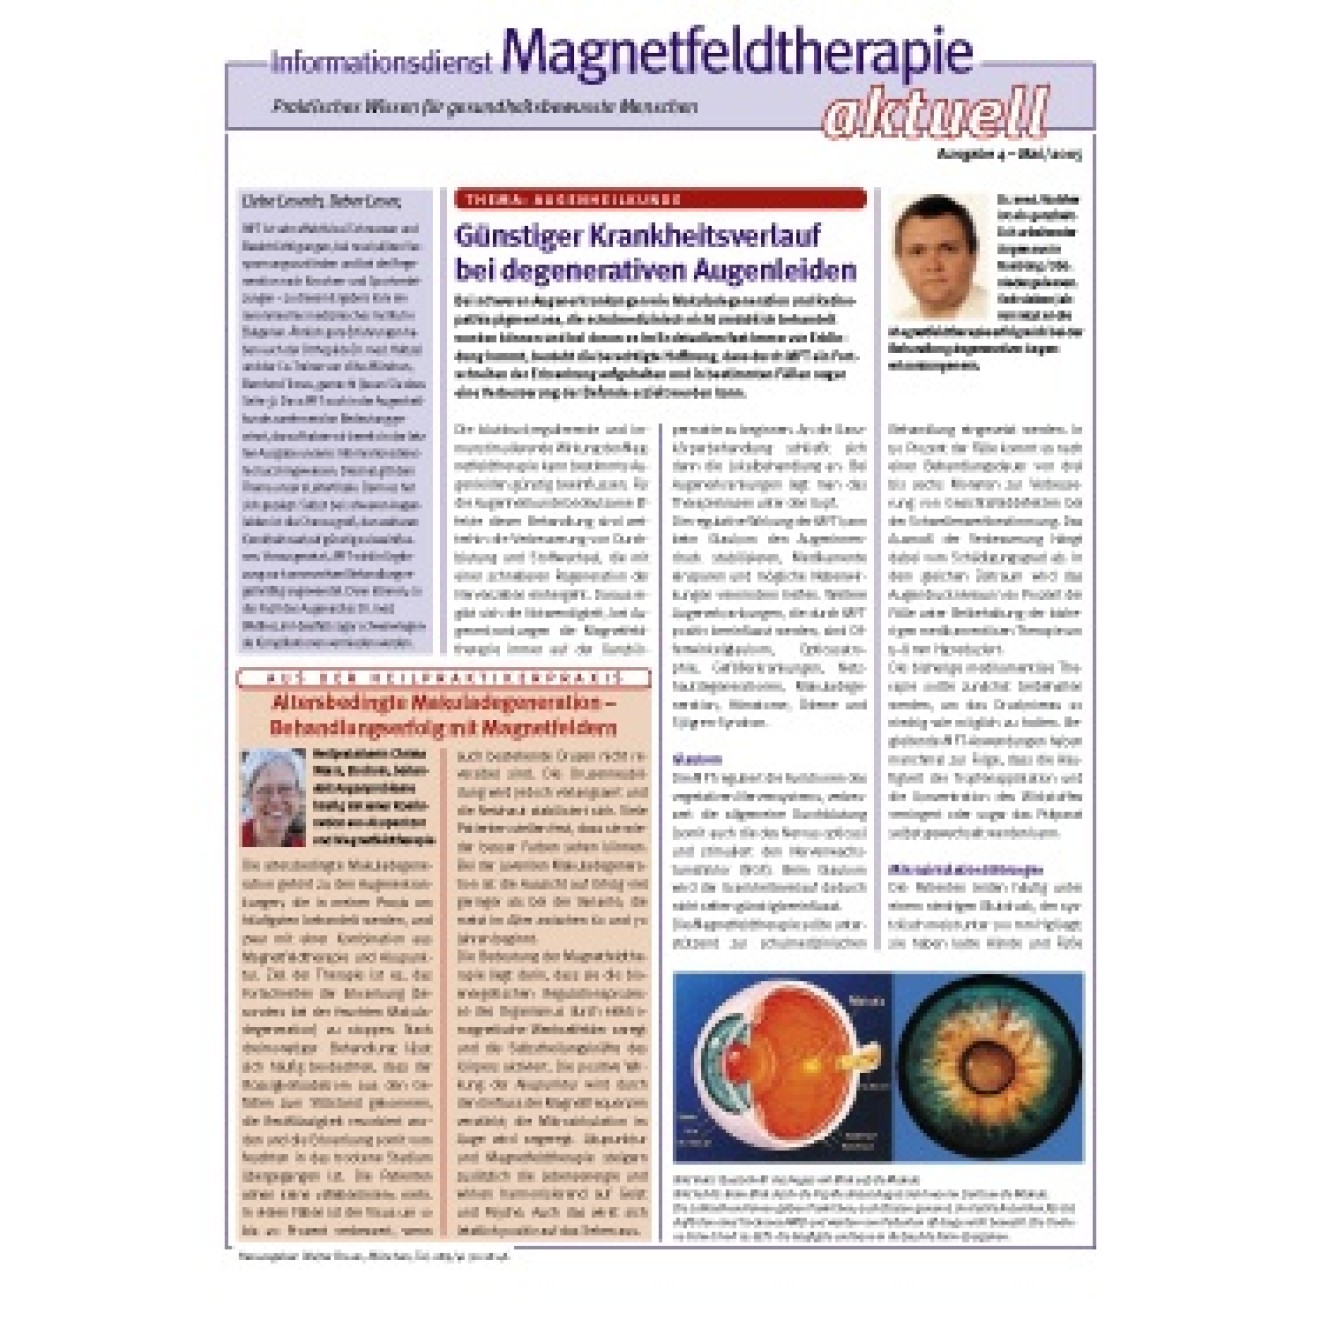 10 pieces "Informationsdienst Magnetfeldtherapie" issue 33